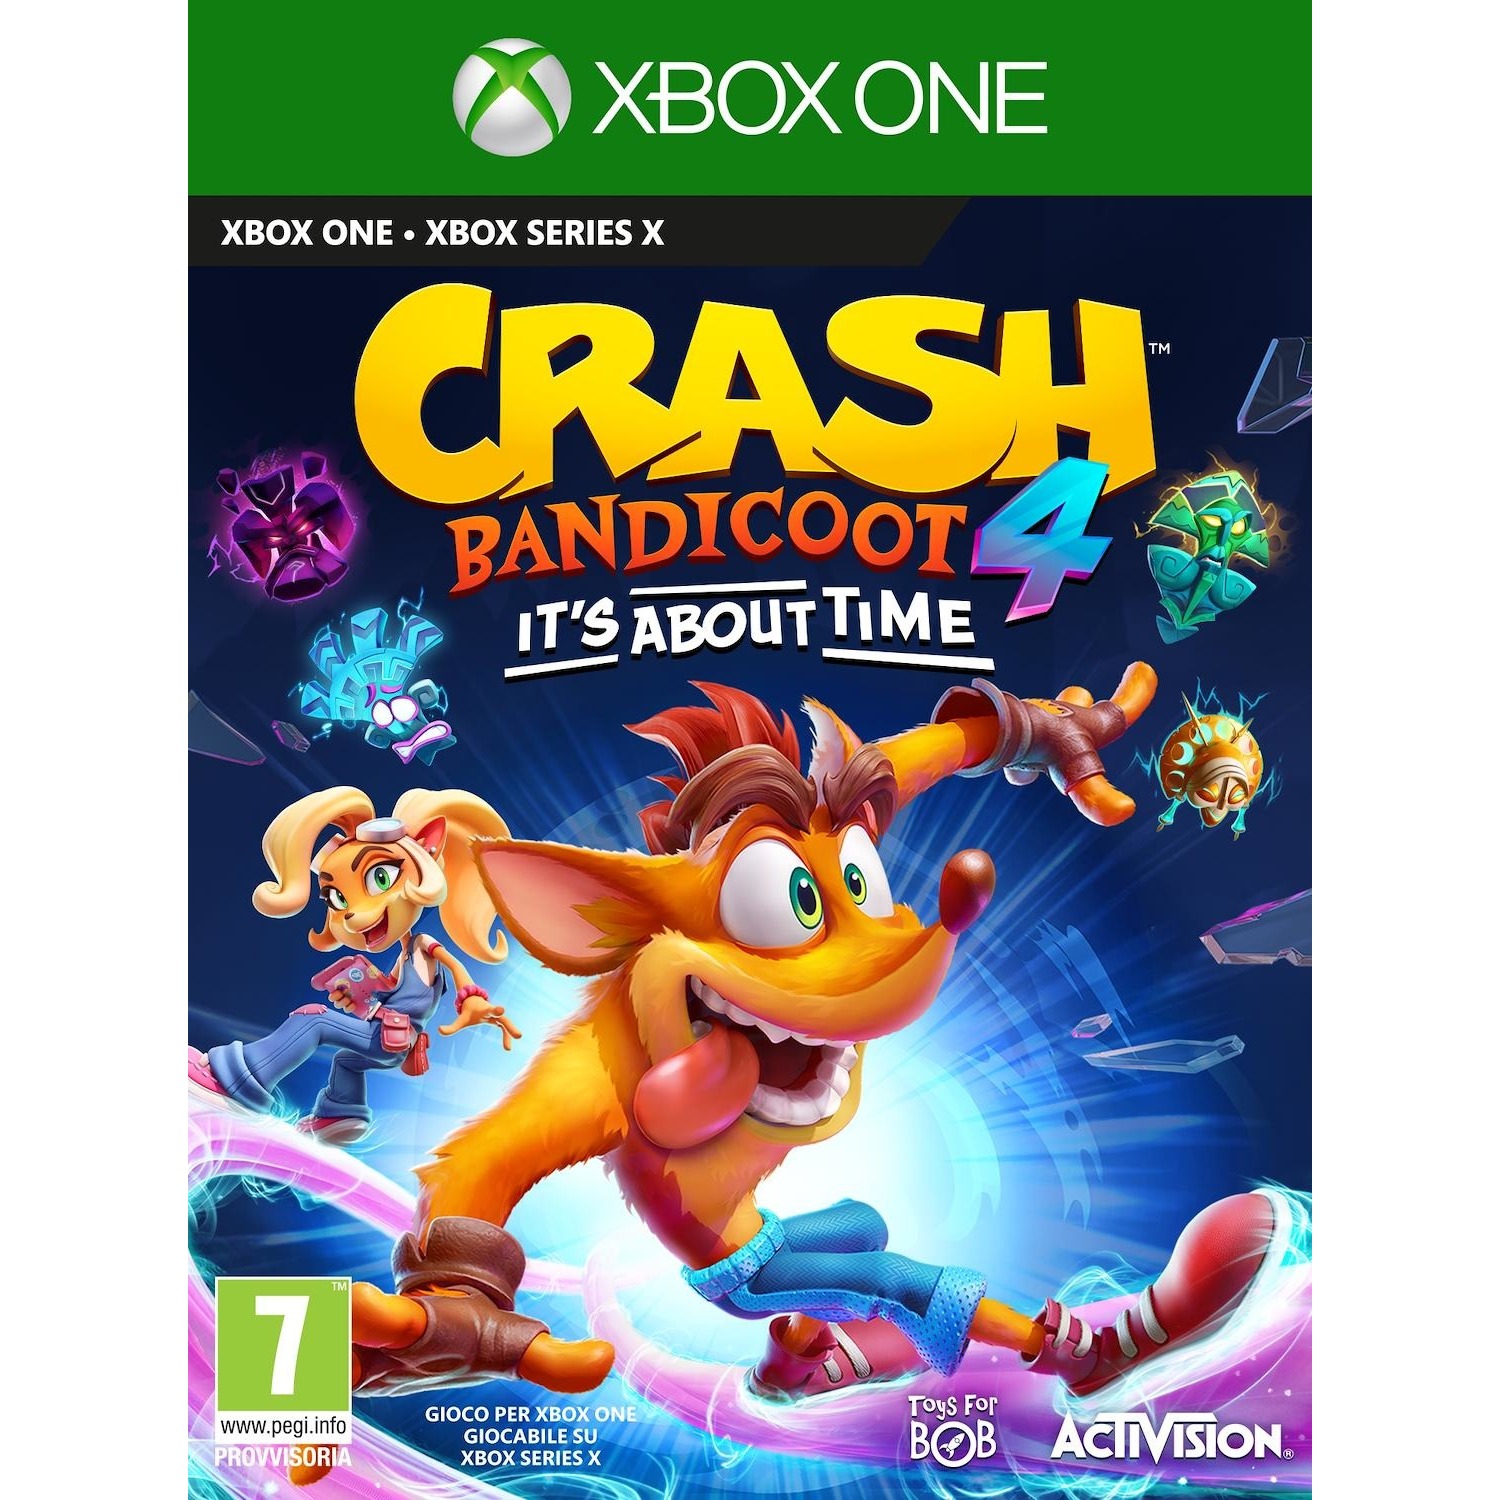 Immagine per Gioco XBOX ONE Crash Bandicoot 4 - It's about time da DIMOStore